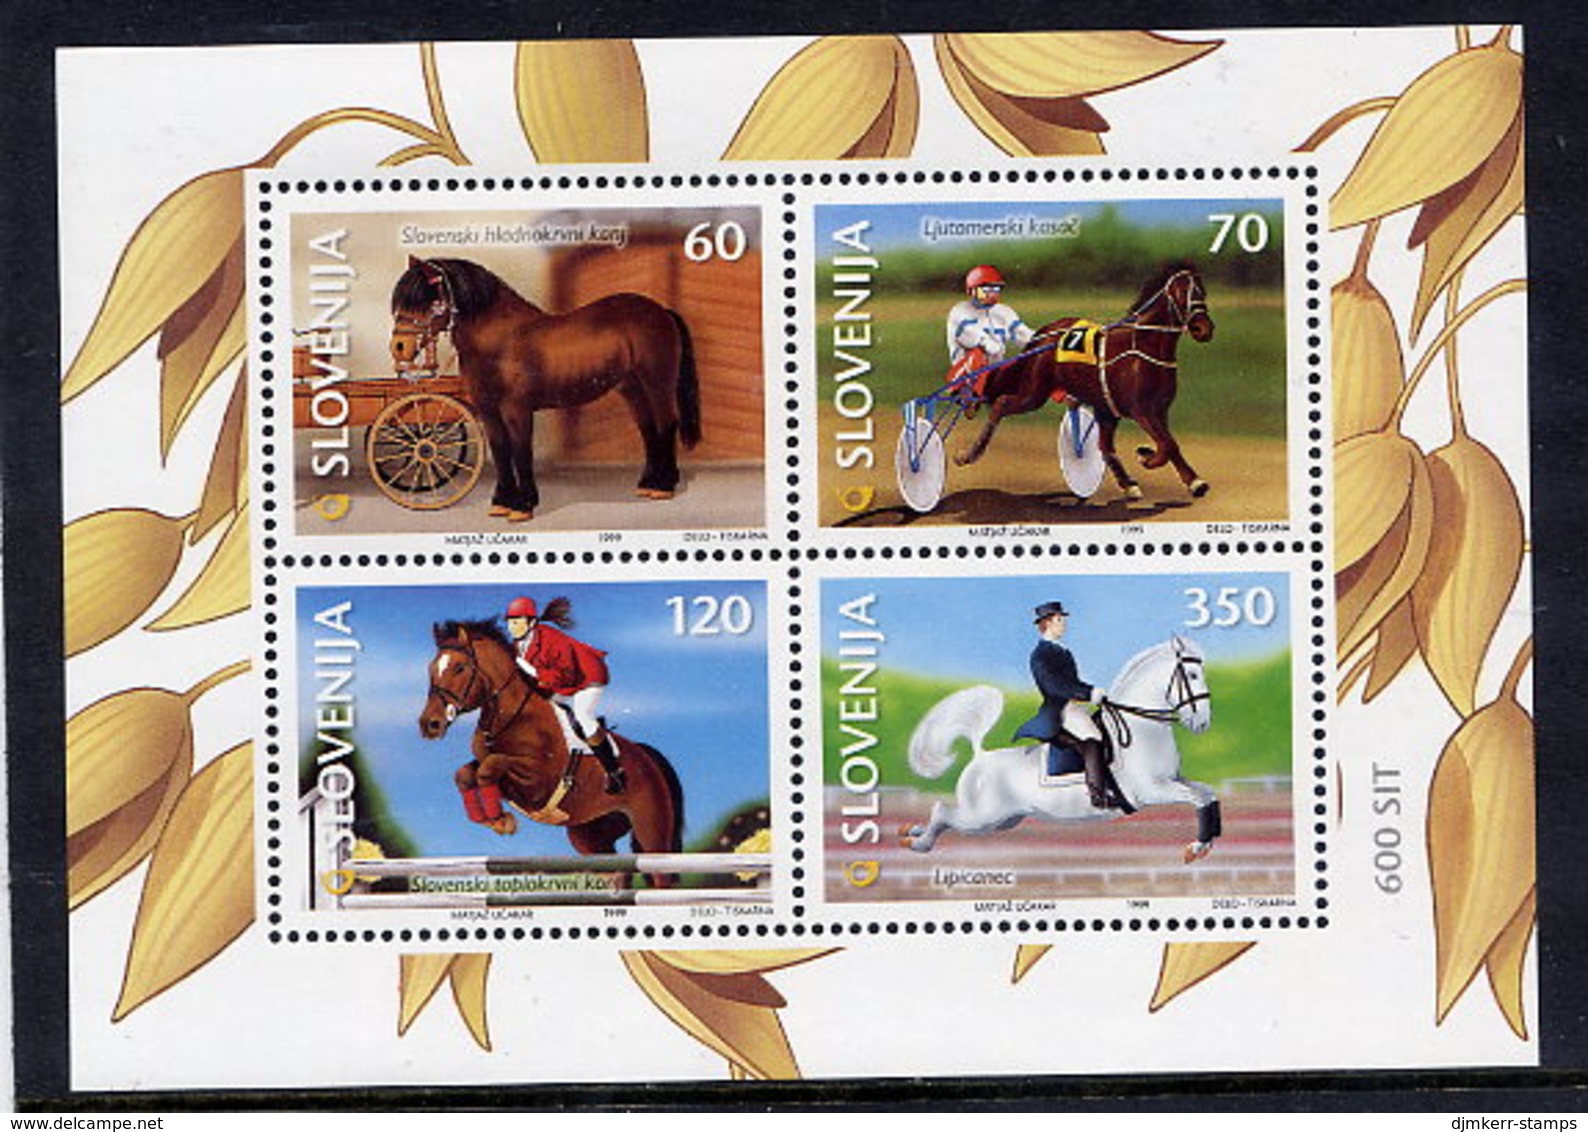 SLOVENIA 1999 Horses: Equestrian Sports Block MNH / **.  Michel Block 9 - Eslovenia